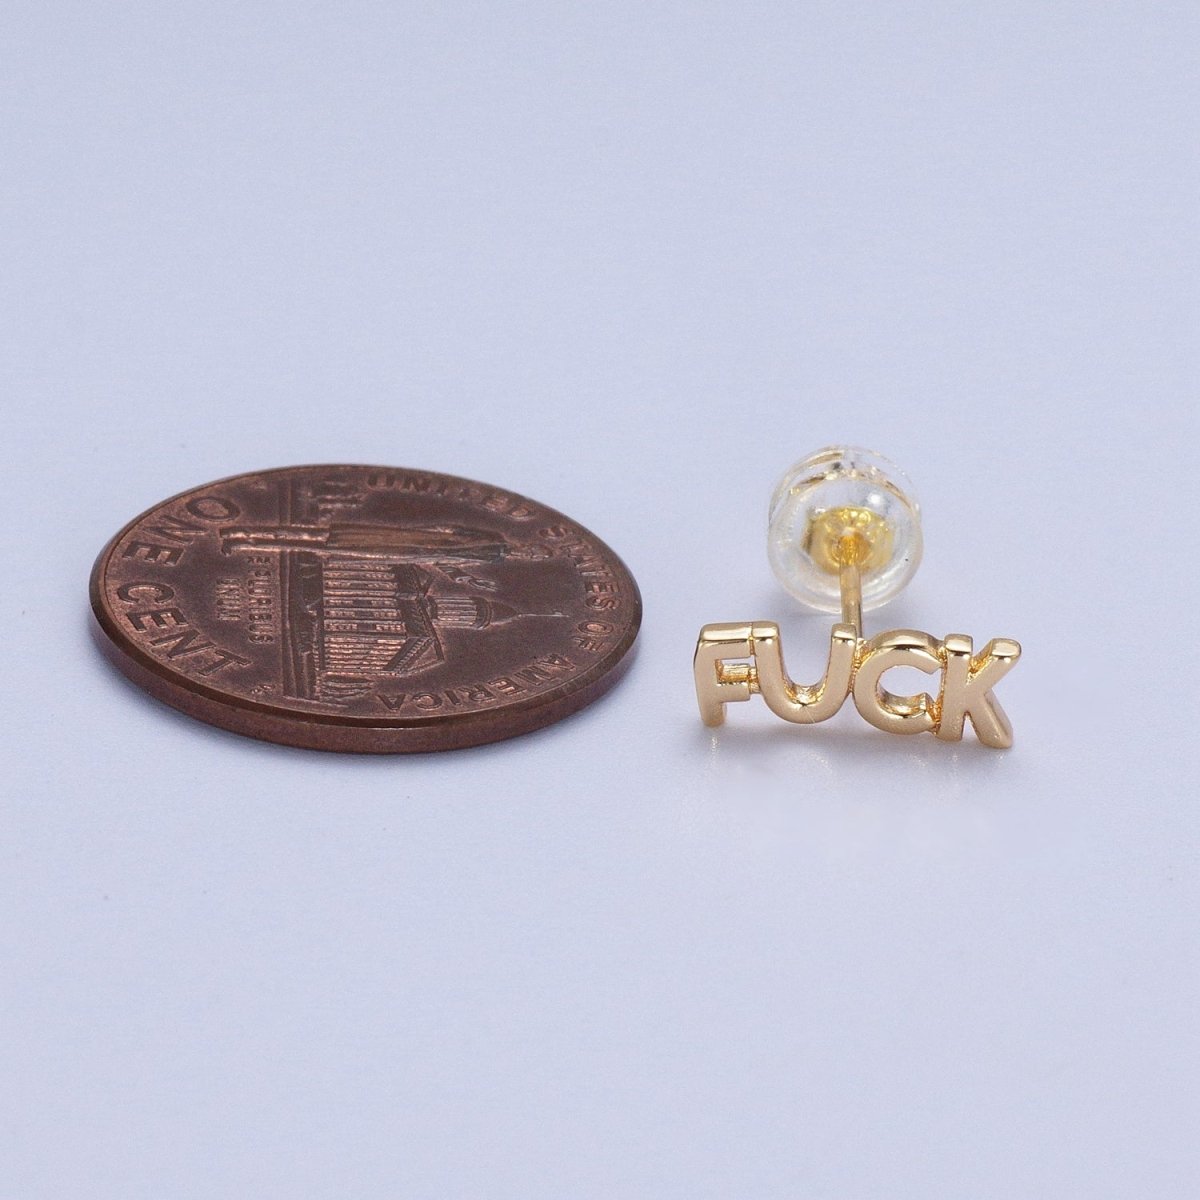 Dainty 16K Gold Filled "FUCK" Script Stud Earrings | Y-274 - DLUXCA